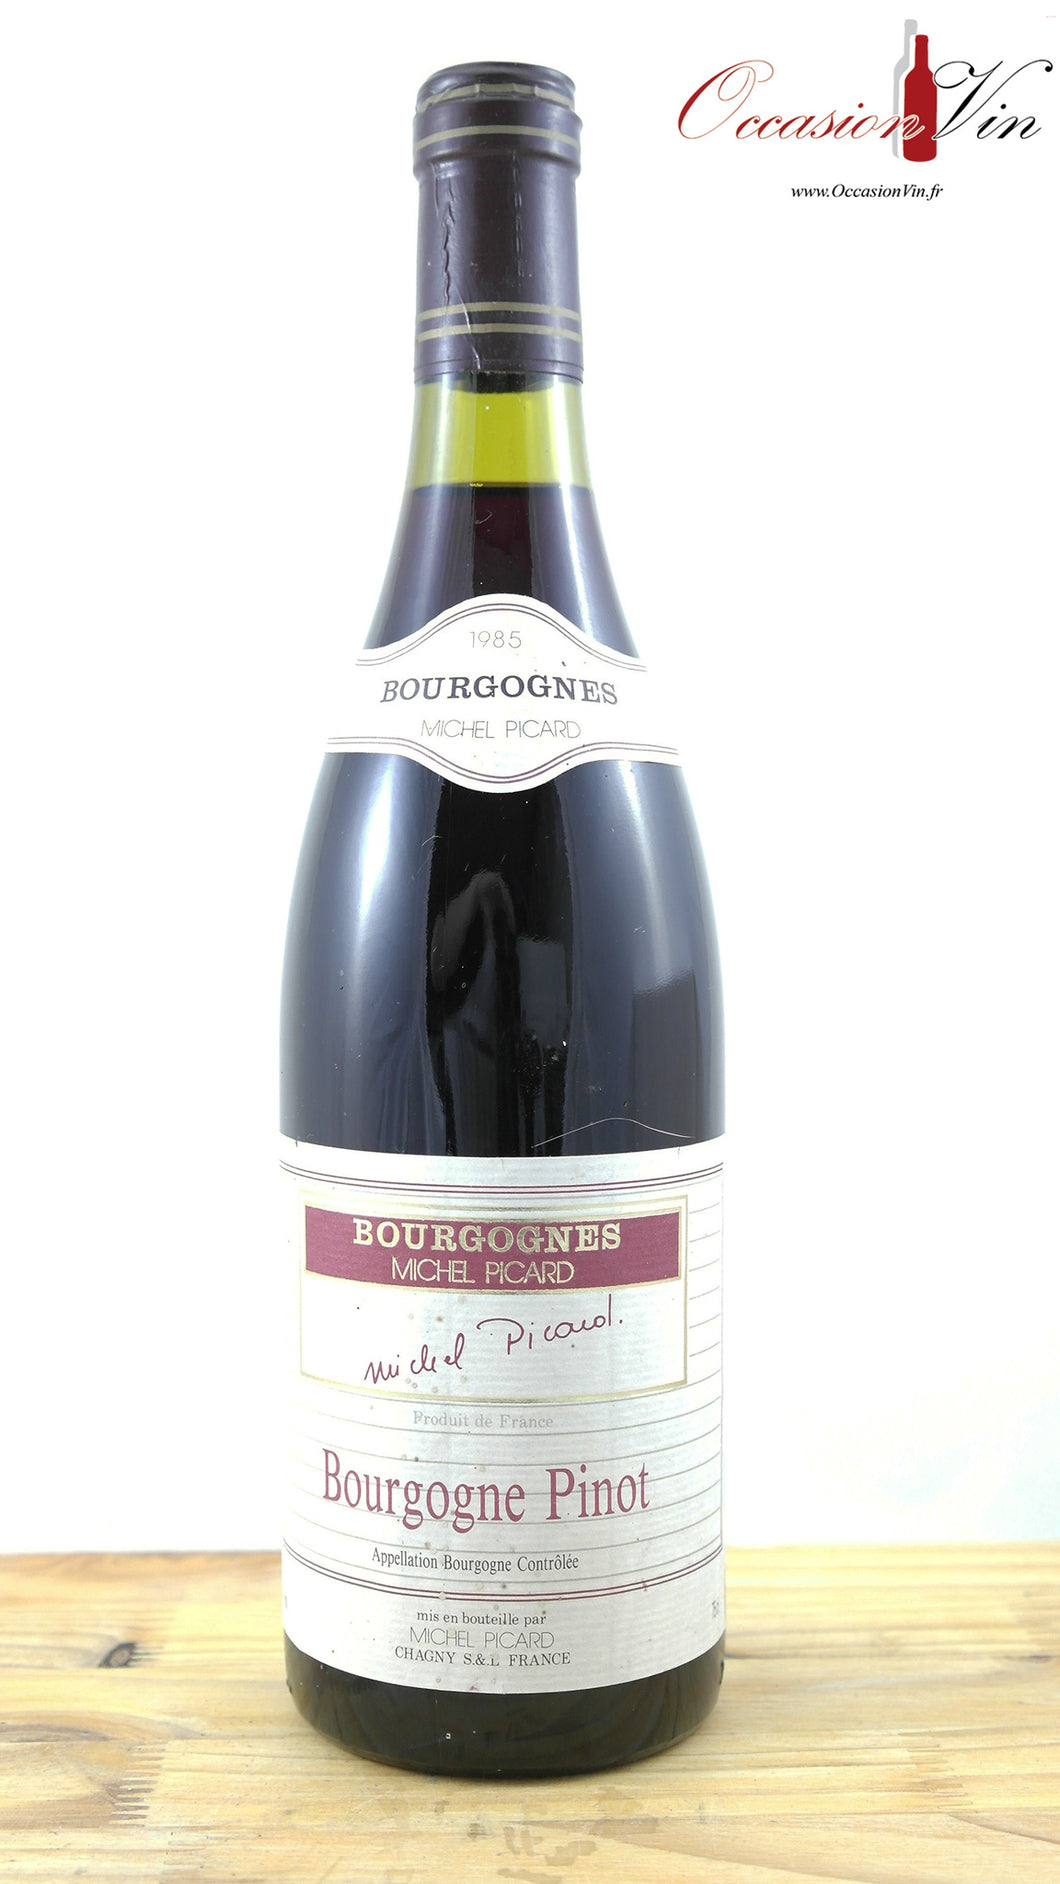 Bourgogne Pinot Michel Picard Vin 1985